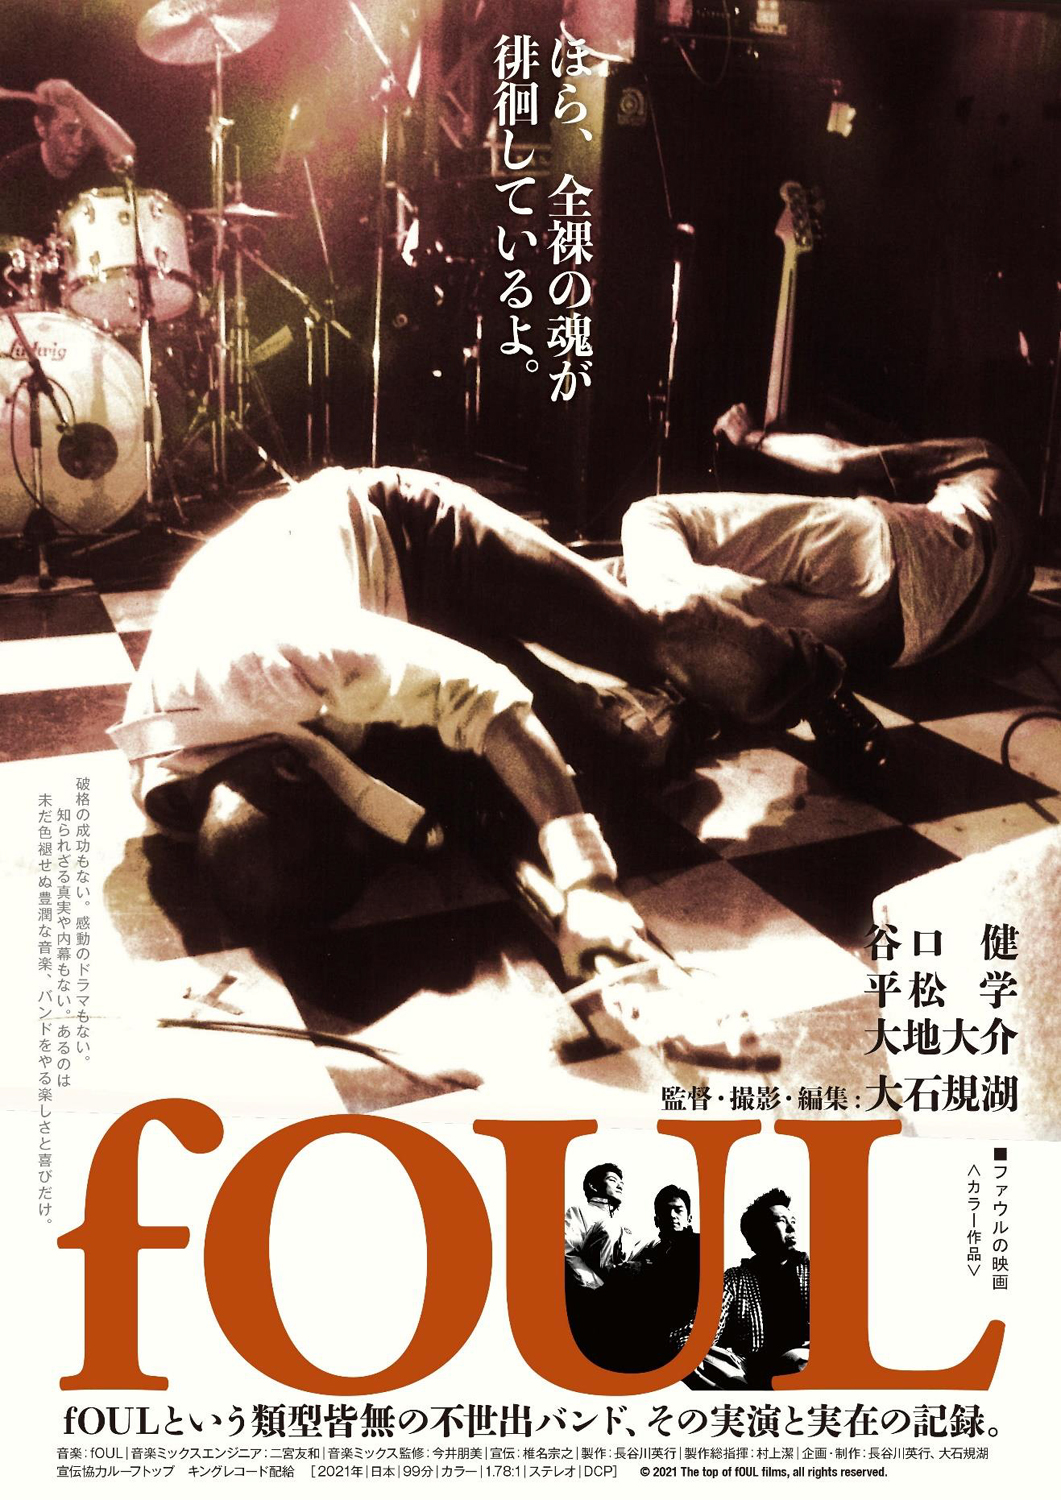 大石規湖『fOUL』 | ©2021 The top of fOUL films, all rights reserved.